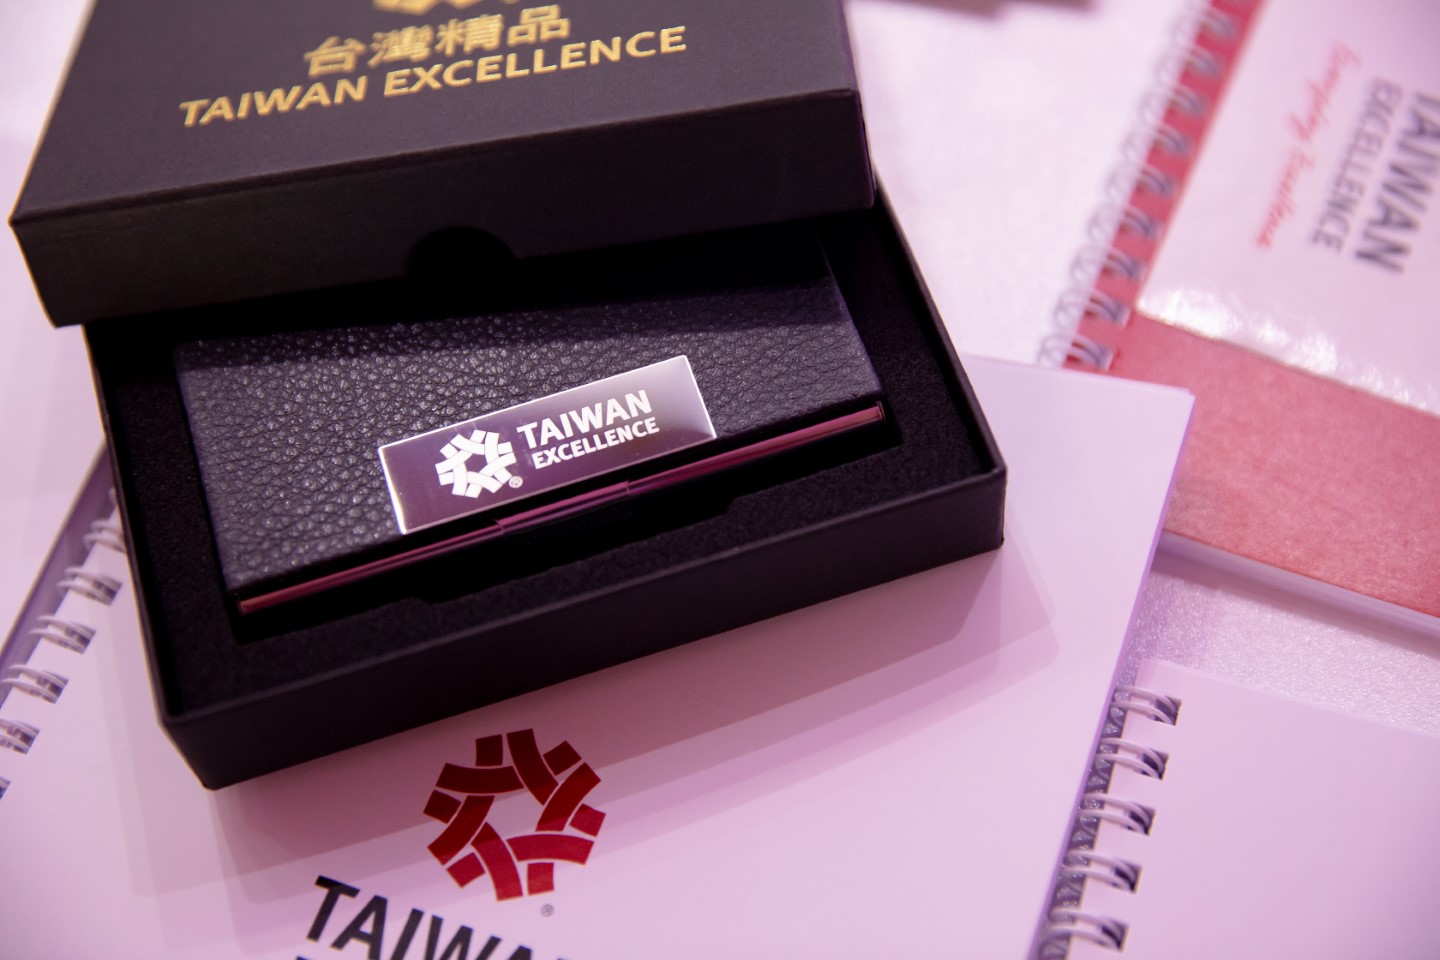 Taiwan Excellence-ը ներկայացրել է Թայբեյի հեղափոխական նորարարությունն ու տեխնոլոգիան WCIT 2019 համաժողովի ժամանակ